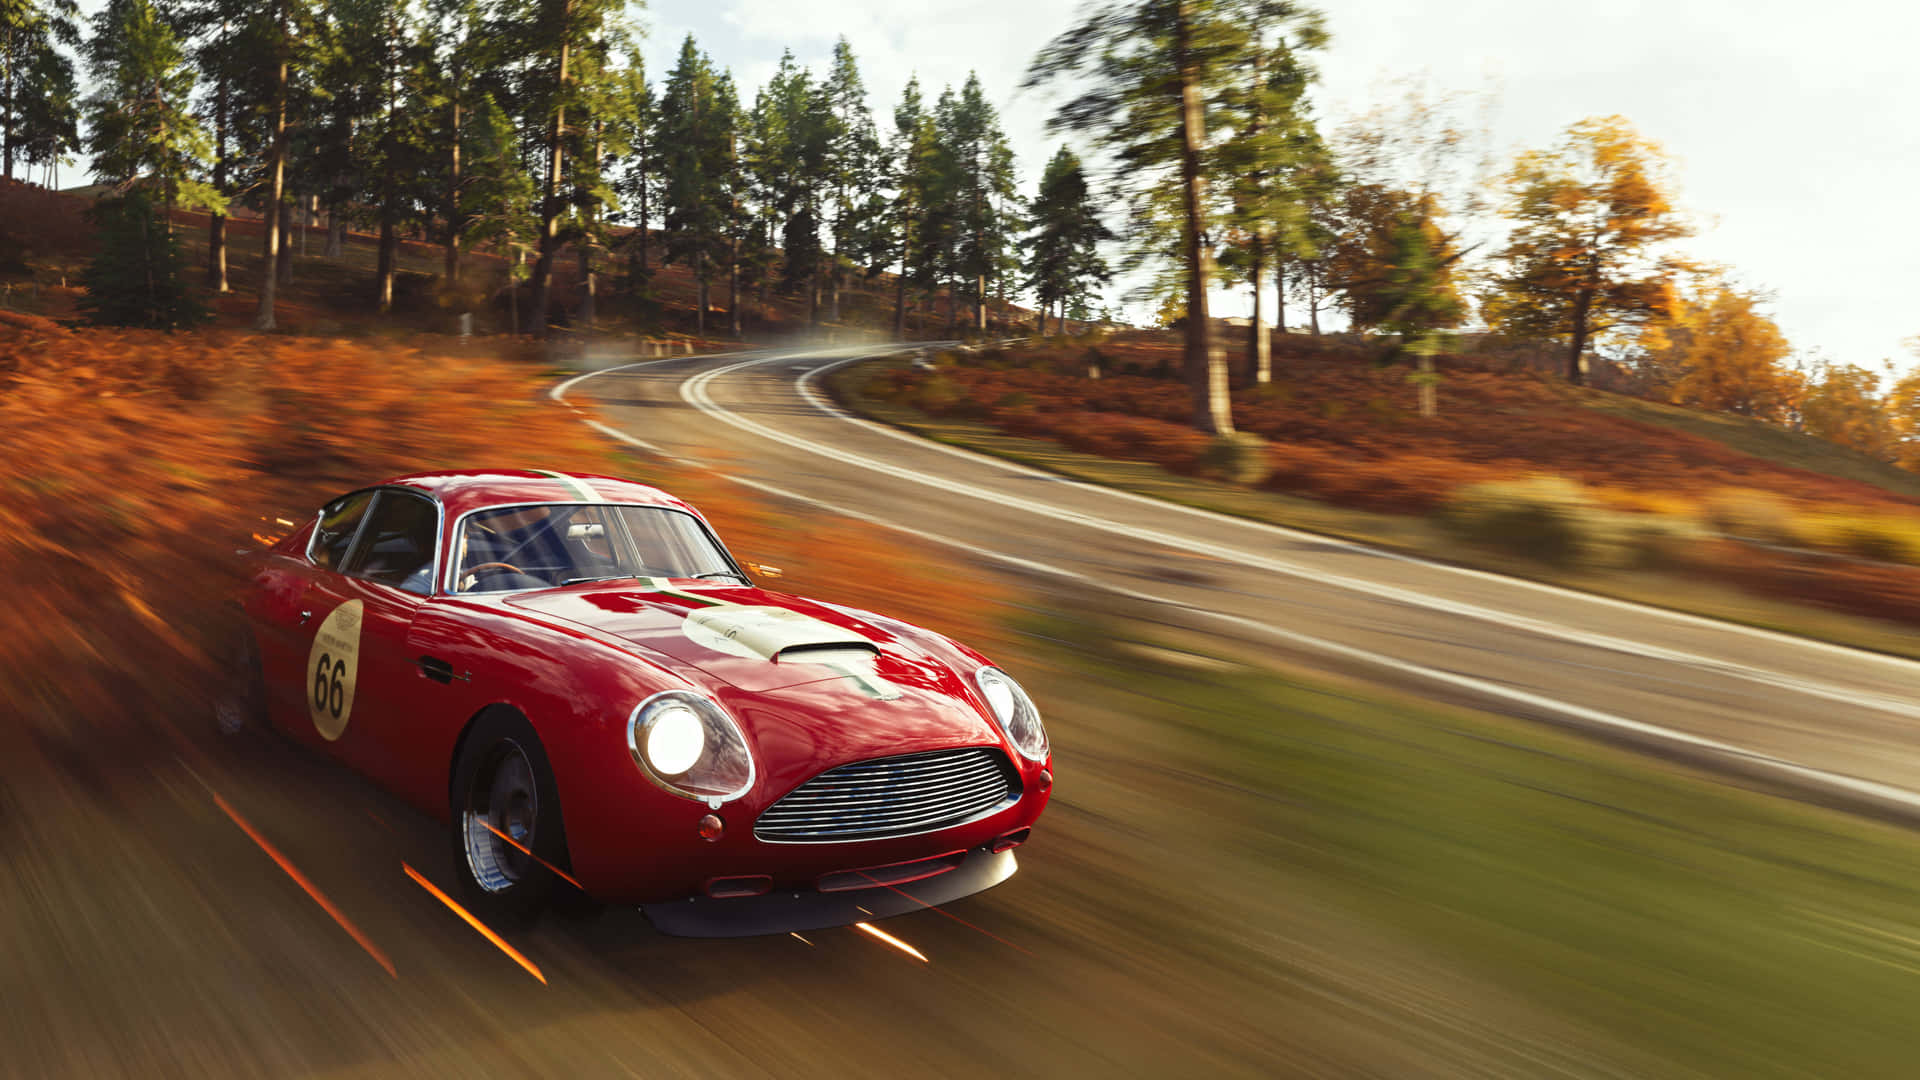 4kbakgrundsbild För Forza Horizon 4 I Rött Med En Aston Martin Db4 Gt Zagato.